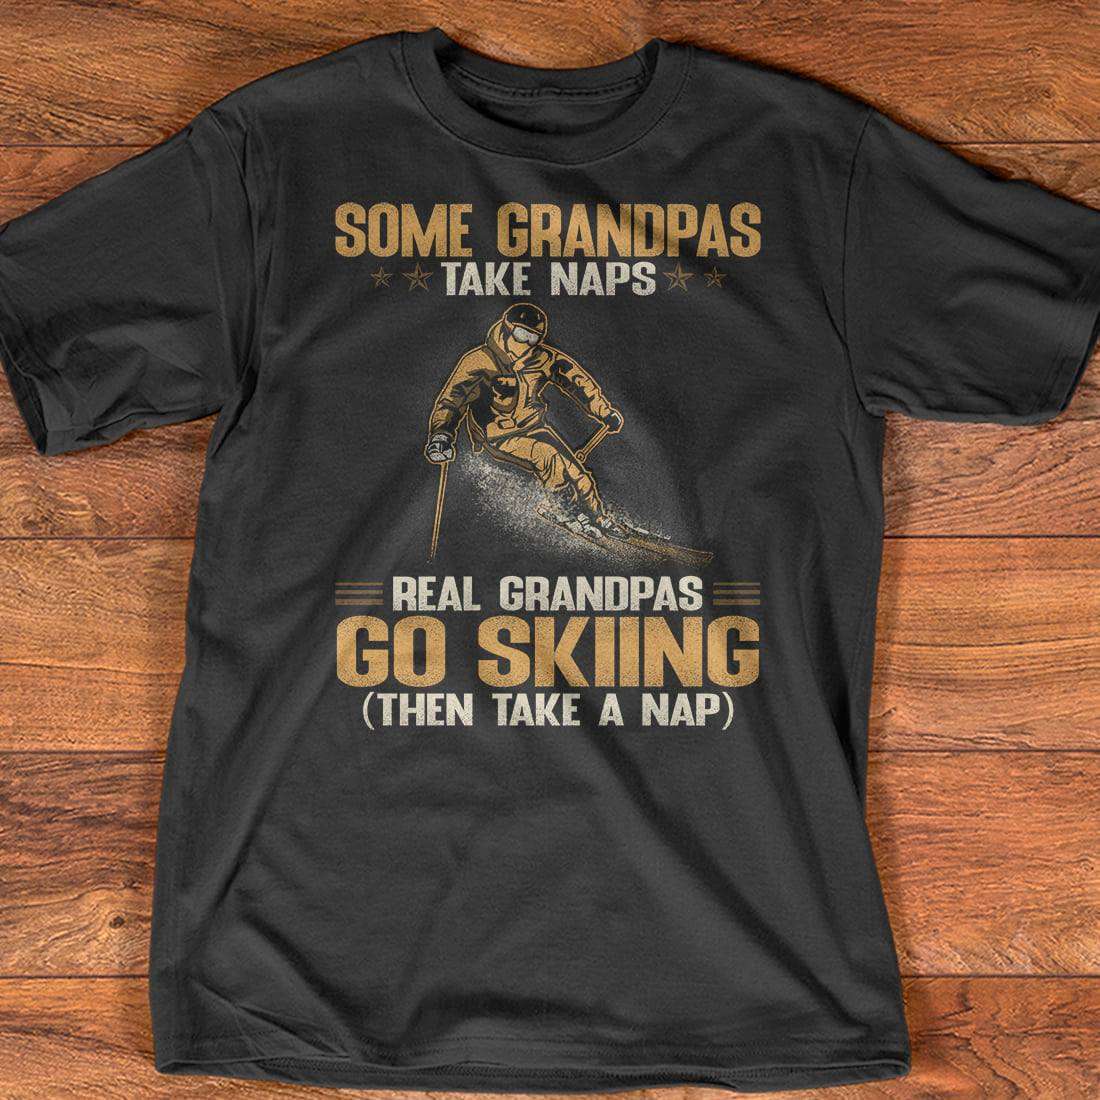 Skiing Man - Some grandpas take naps real granpas go skiing then take a nap